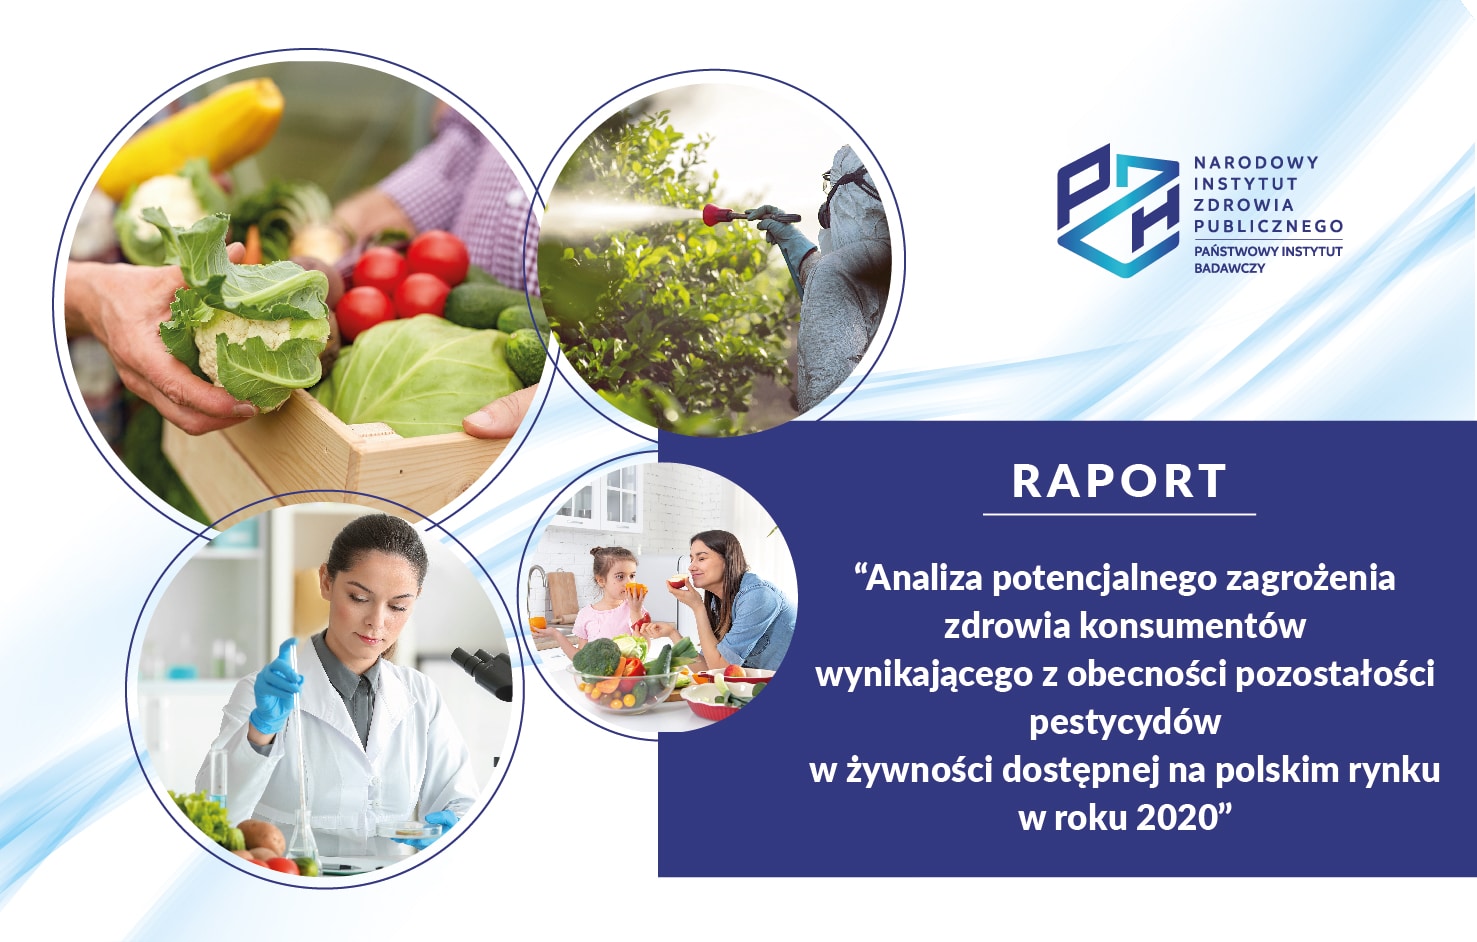 Read more about the article RAPORT: Analiza potencjalnego zagrożenia zdrowia konsumentów wynikającego z pozostałości pestycydów w żywności dostępnej na polskim rynku w roku 2020.